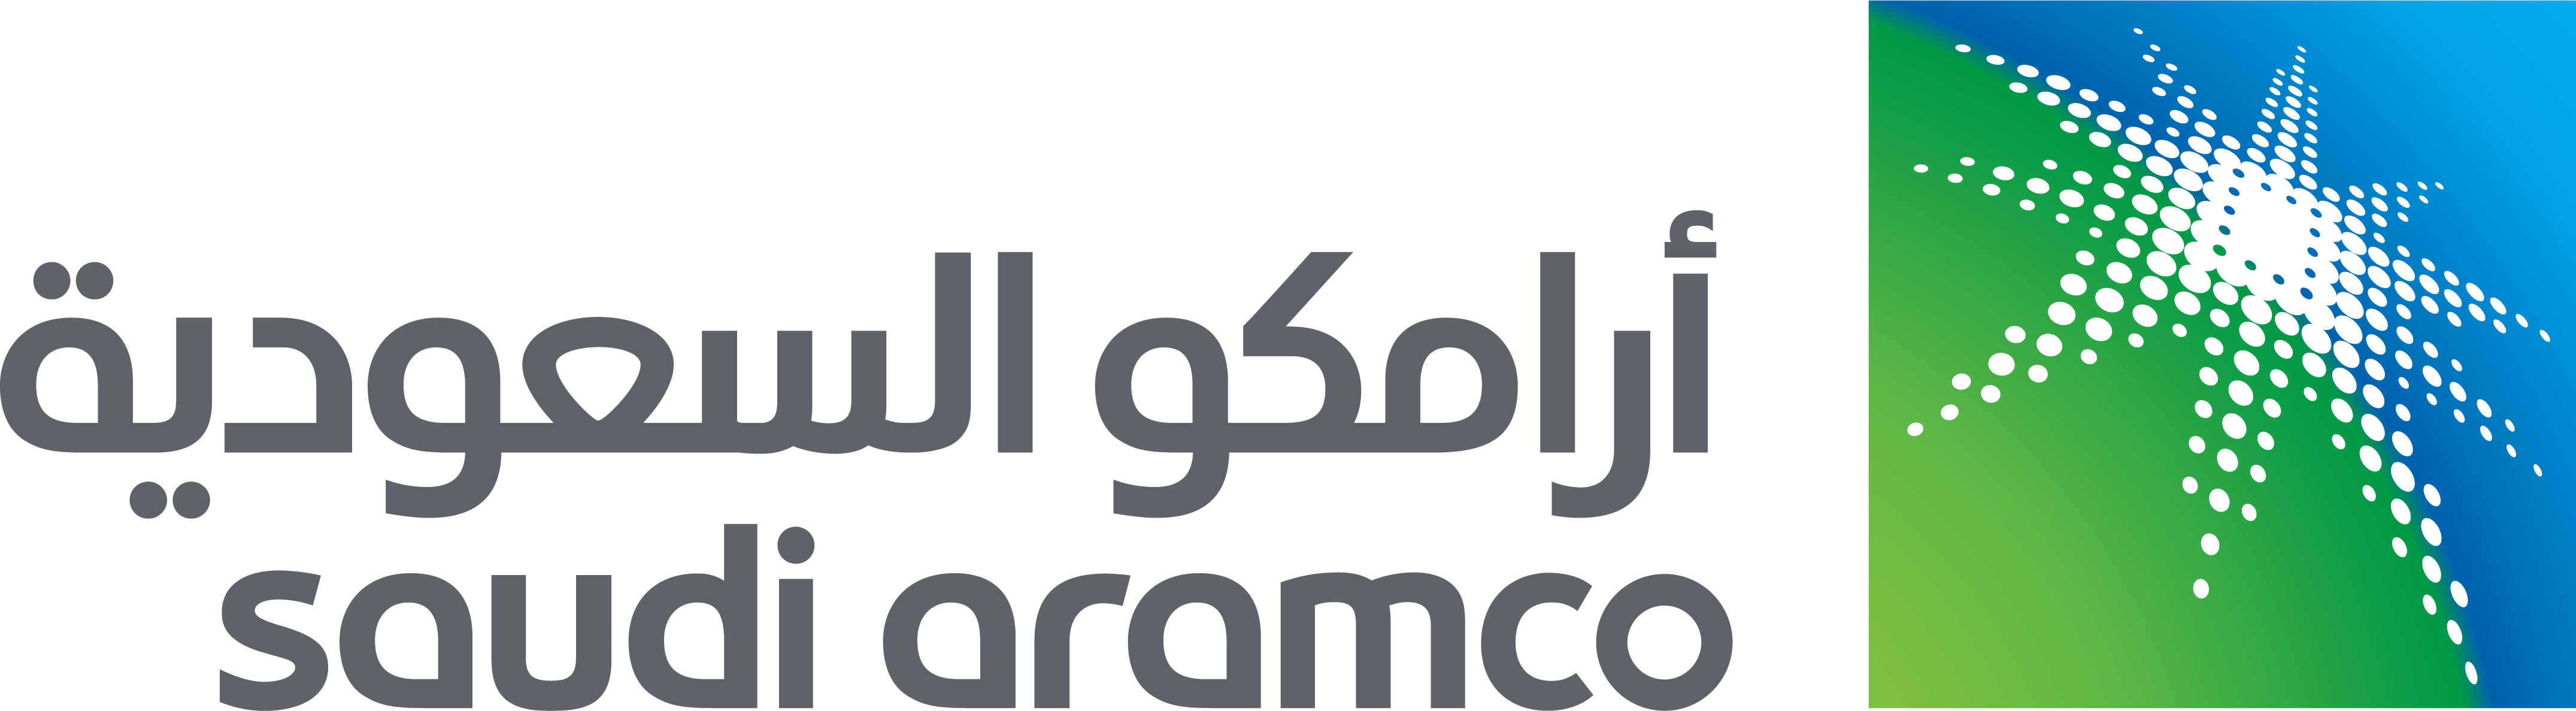 Saudi Aramco, Qurayyah Laboratory Unit (QLU)